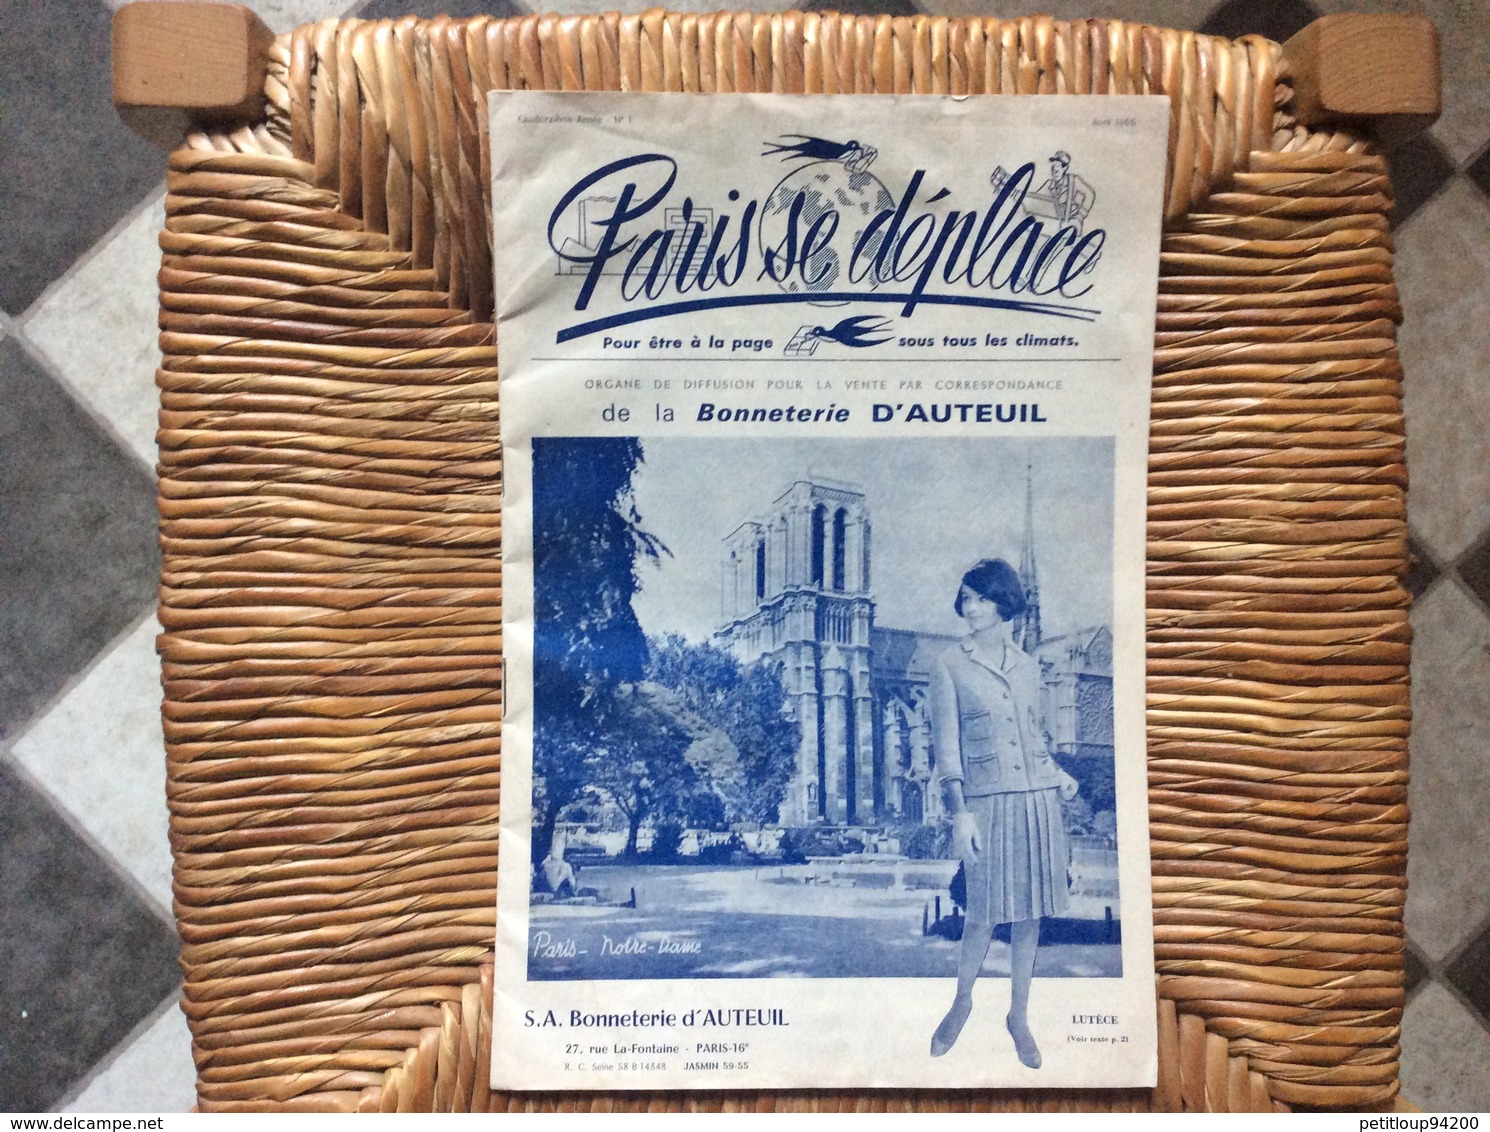 DOCUMENT COMMERCIAL CATALOGUE PARIS SE DÉPLACE No1 Bonneterie D’Auteuil  PARIS-NOTRE-DAME  Avril 1965 - Textile & Vestimentaire